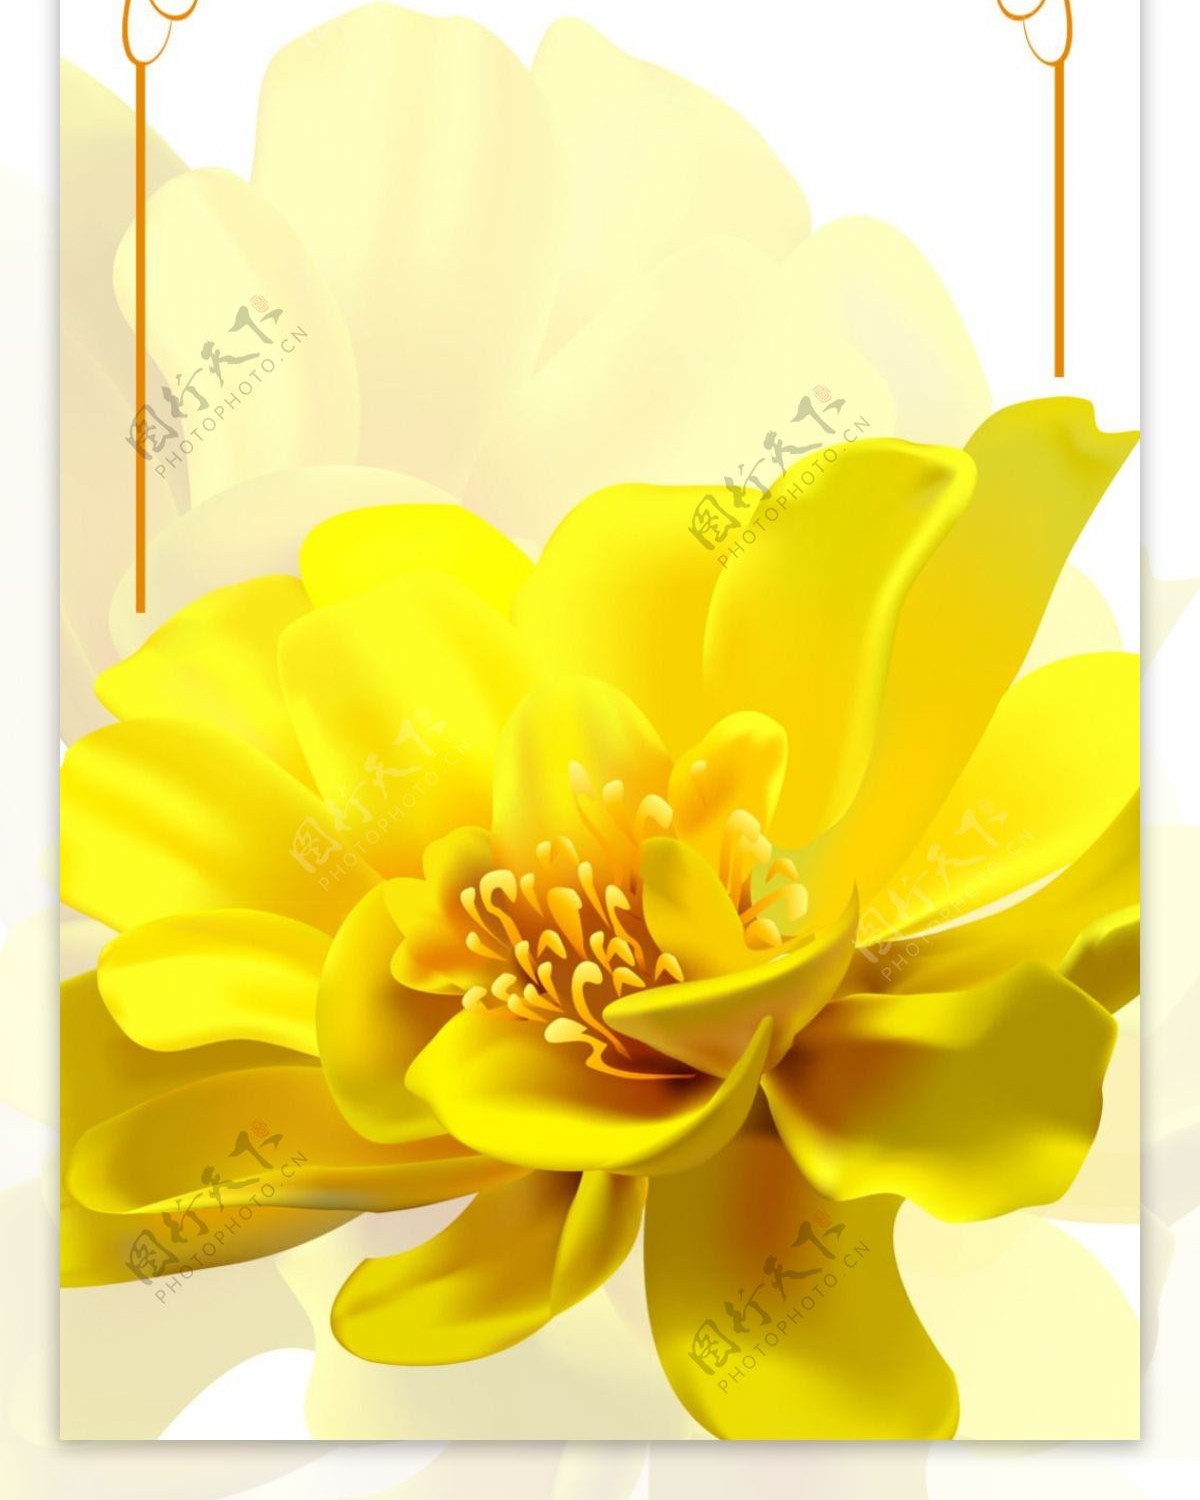 精美黄色花儿展架设计模板素材画面设计海报